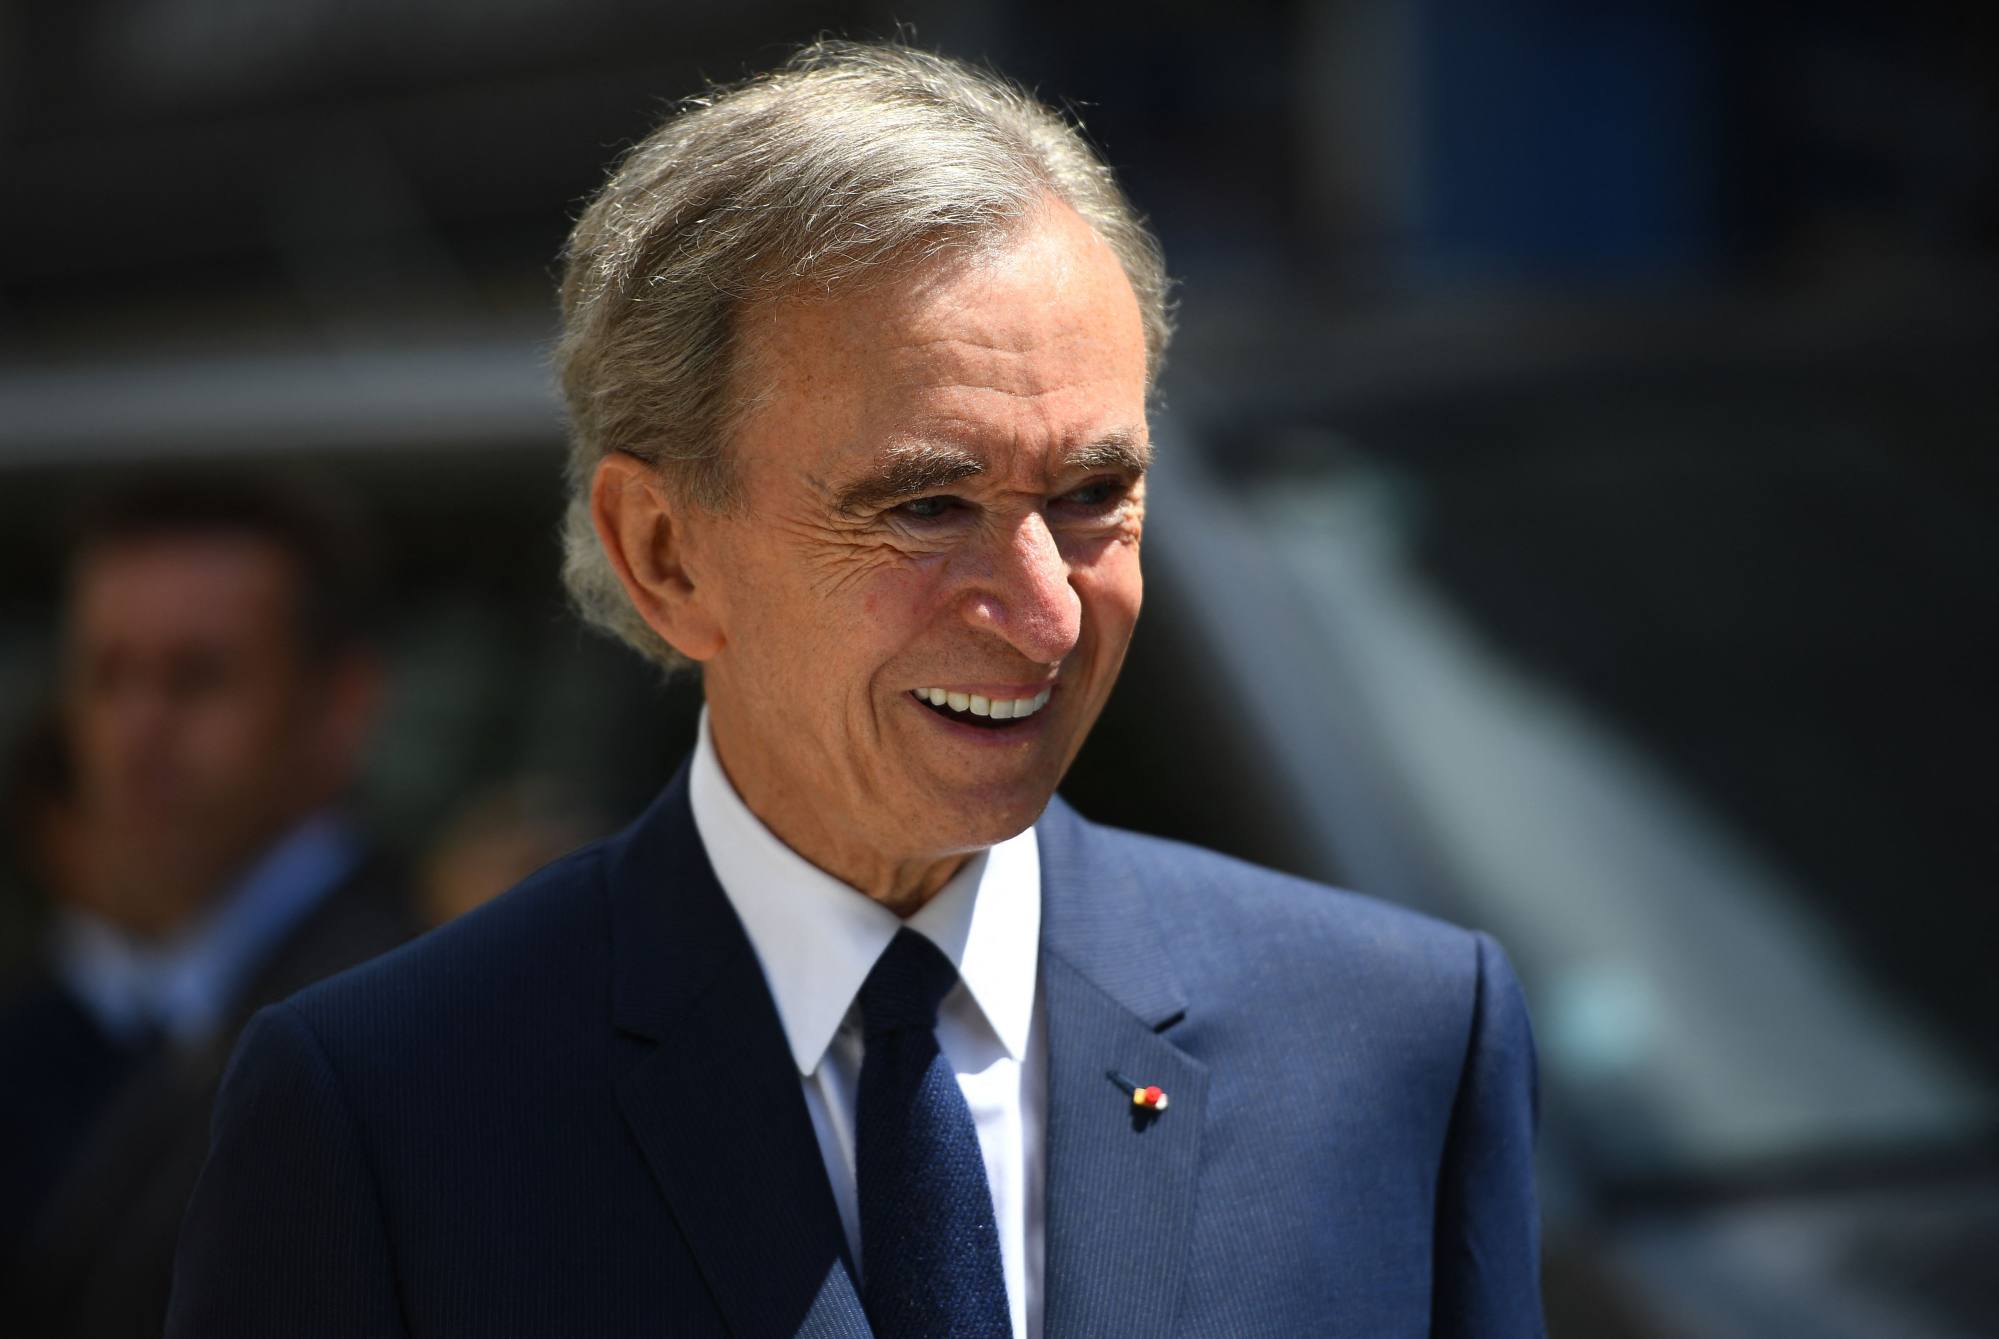 Bernard Arnault, người đứng đầu tập đoàn đa quốc gia Pháp LVMH tham dự buổi lễ đánh dấu việc mở cửa trở lại cửa hàng bách hóa La Samaritaine mang tính biểu tượng của Paris sau 16 năm đóng cửa vào tháng 6/2021. Ảnh: @AFP